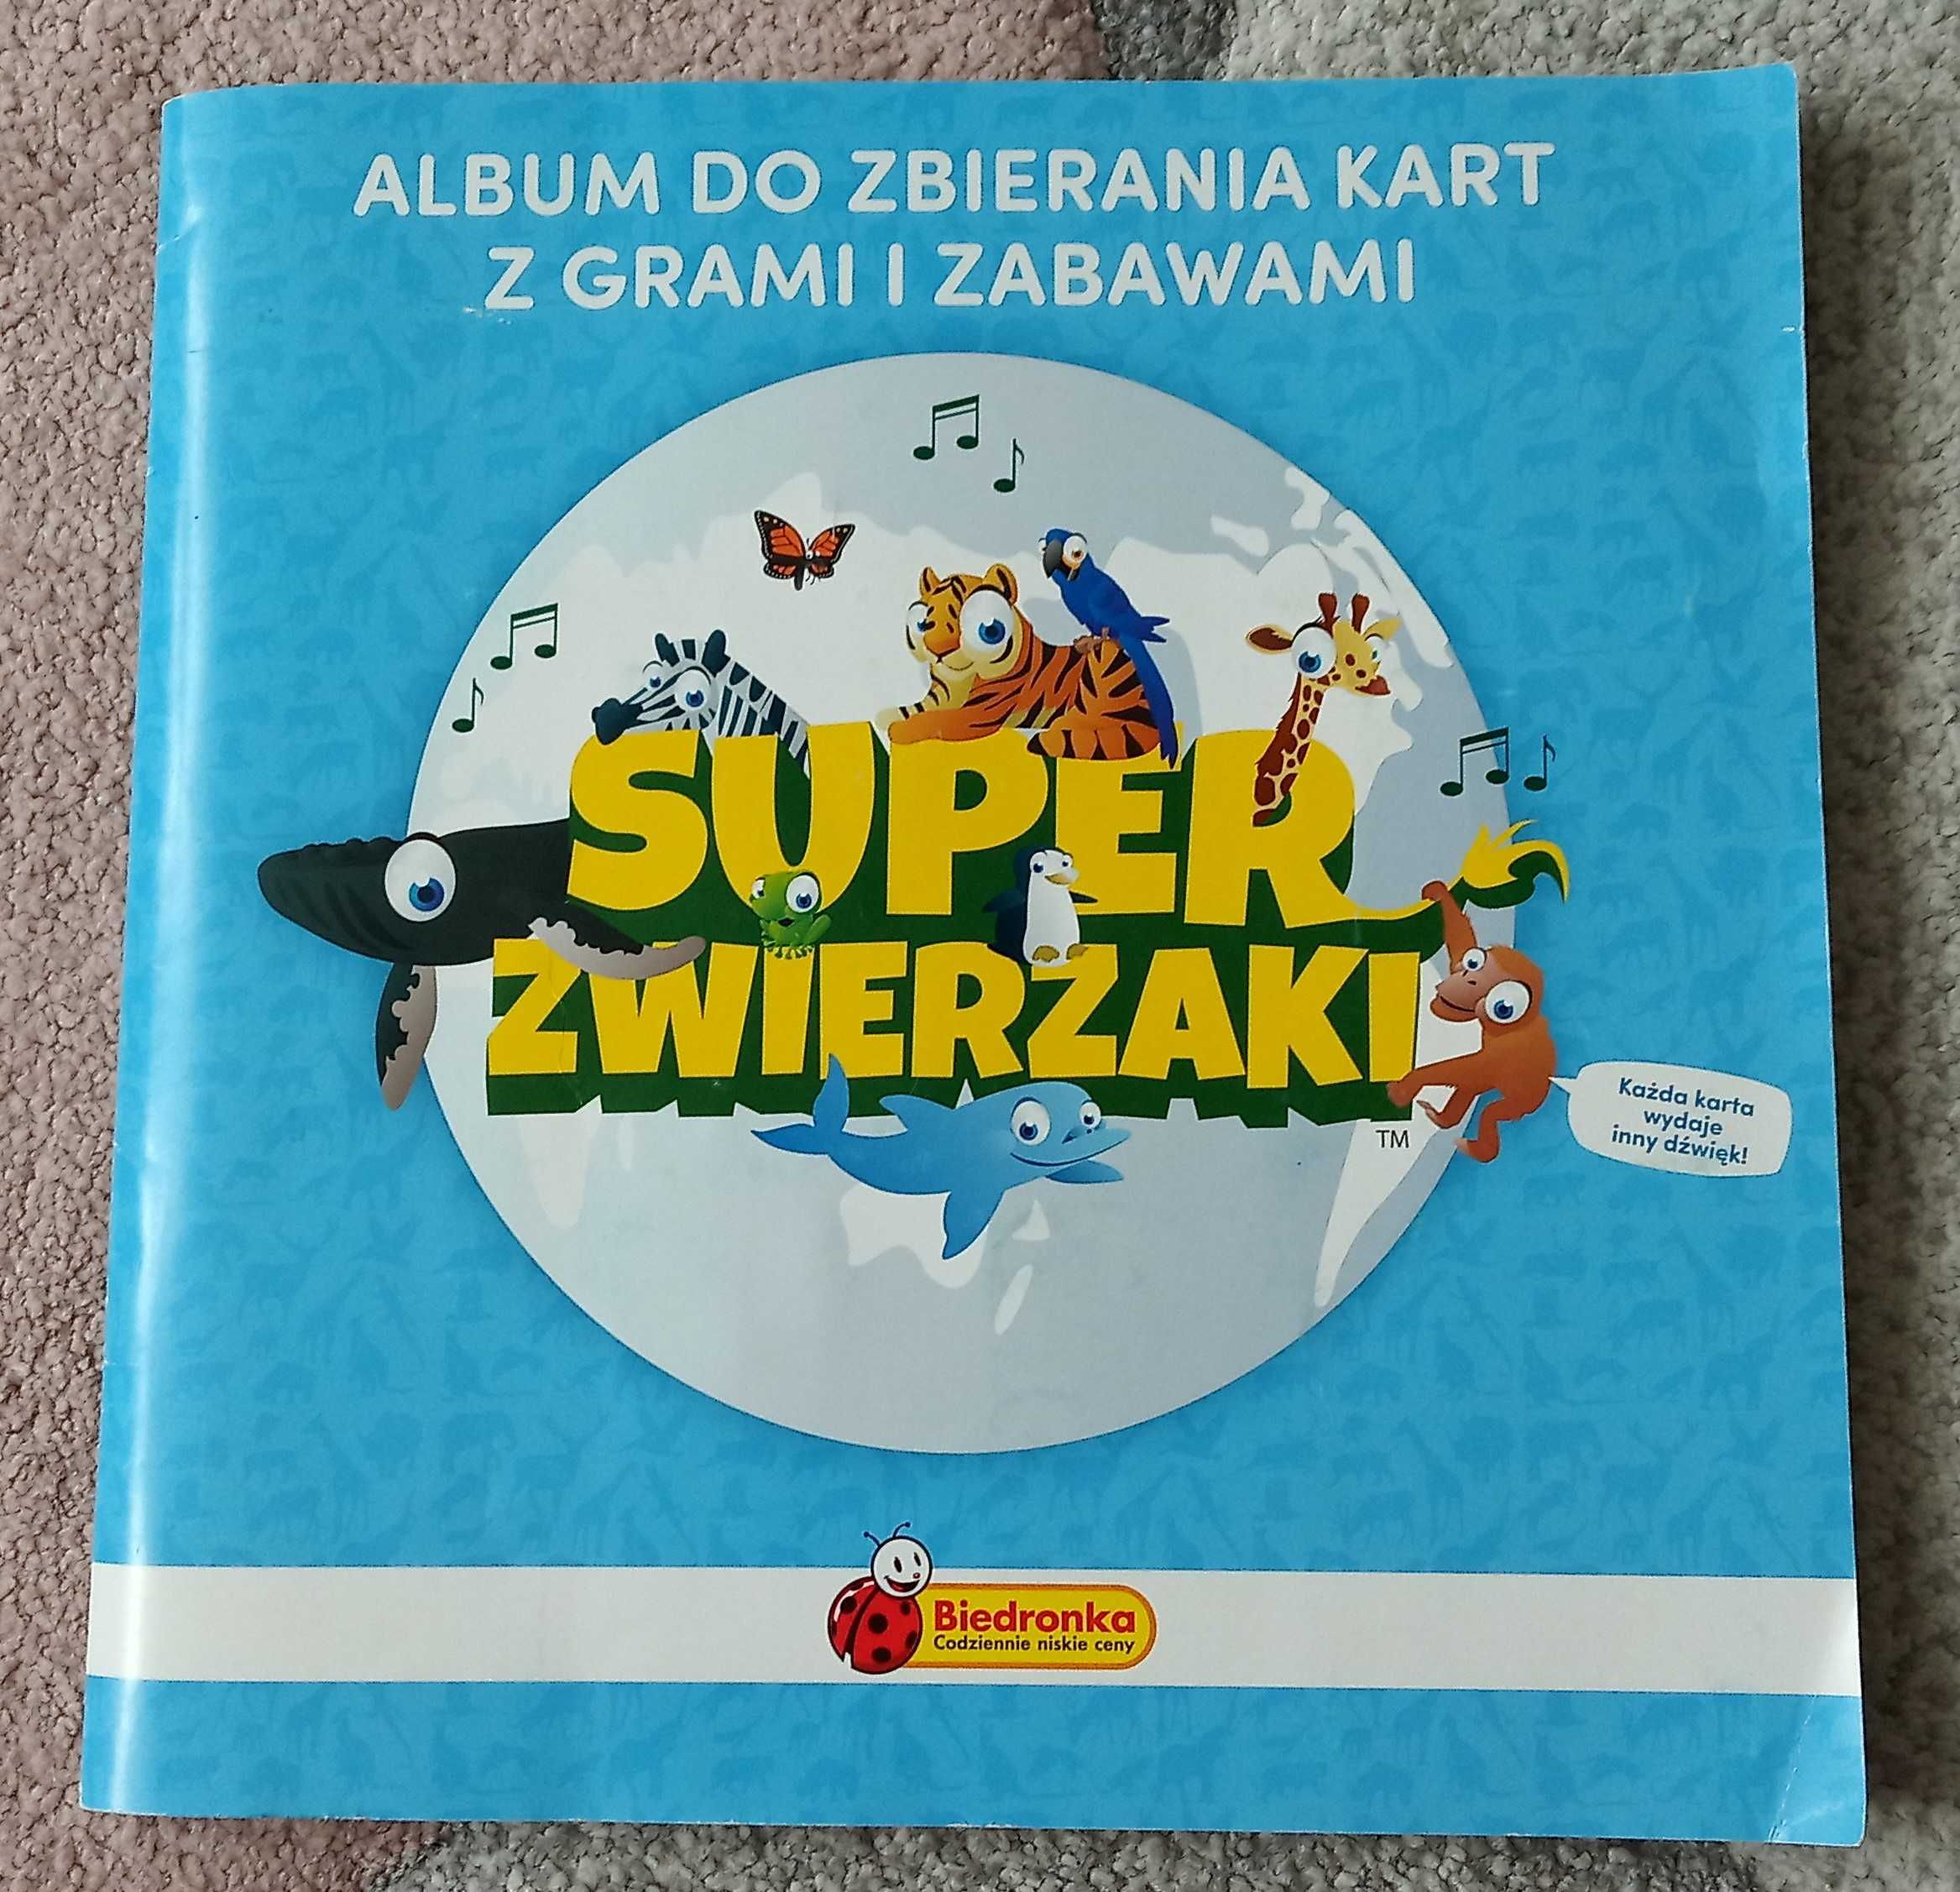 Album Super Zwierzaki ze wszystkimi kartami z biedronki